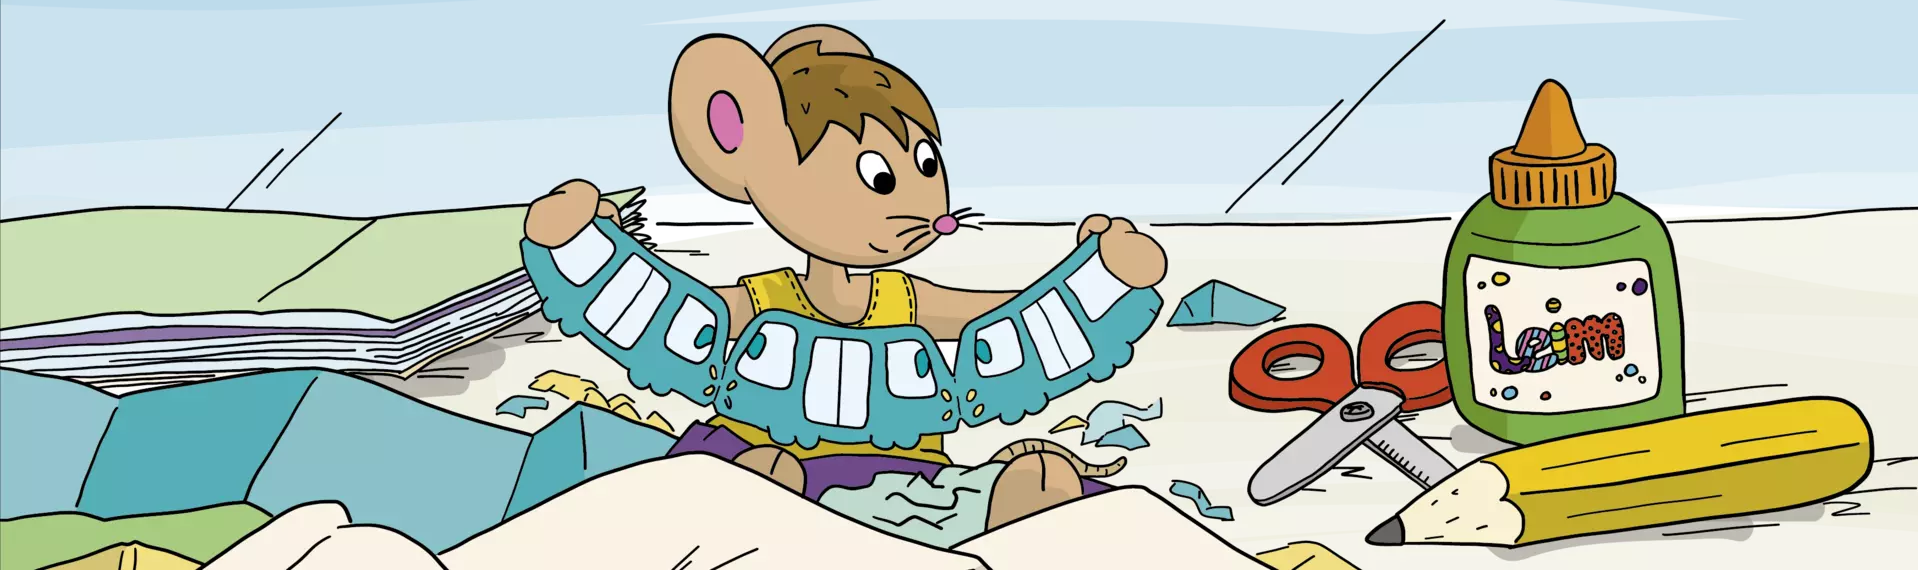 Zeichentrickgrafik mit Lisa der Maus, die eine VGF-Girlande bastelt